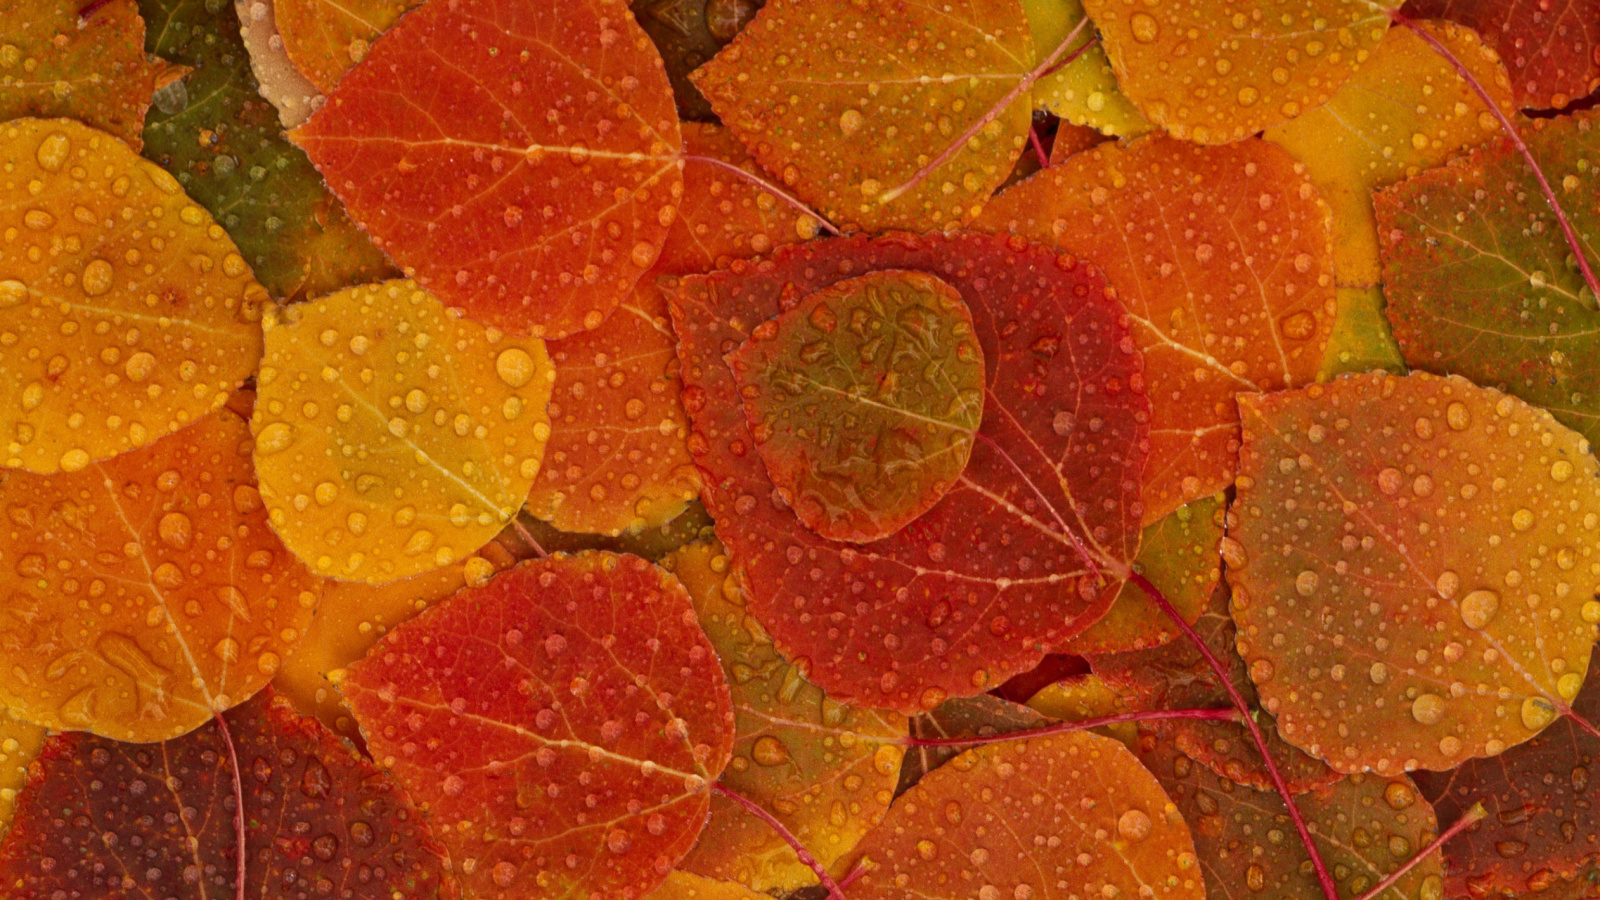 Das Autumn leaves with rain drops Wallpaper 1600x900